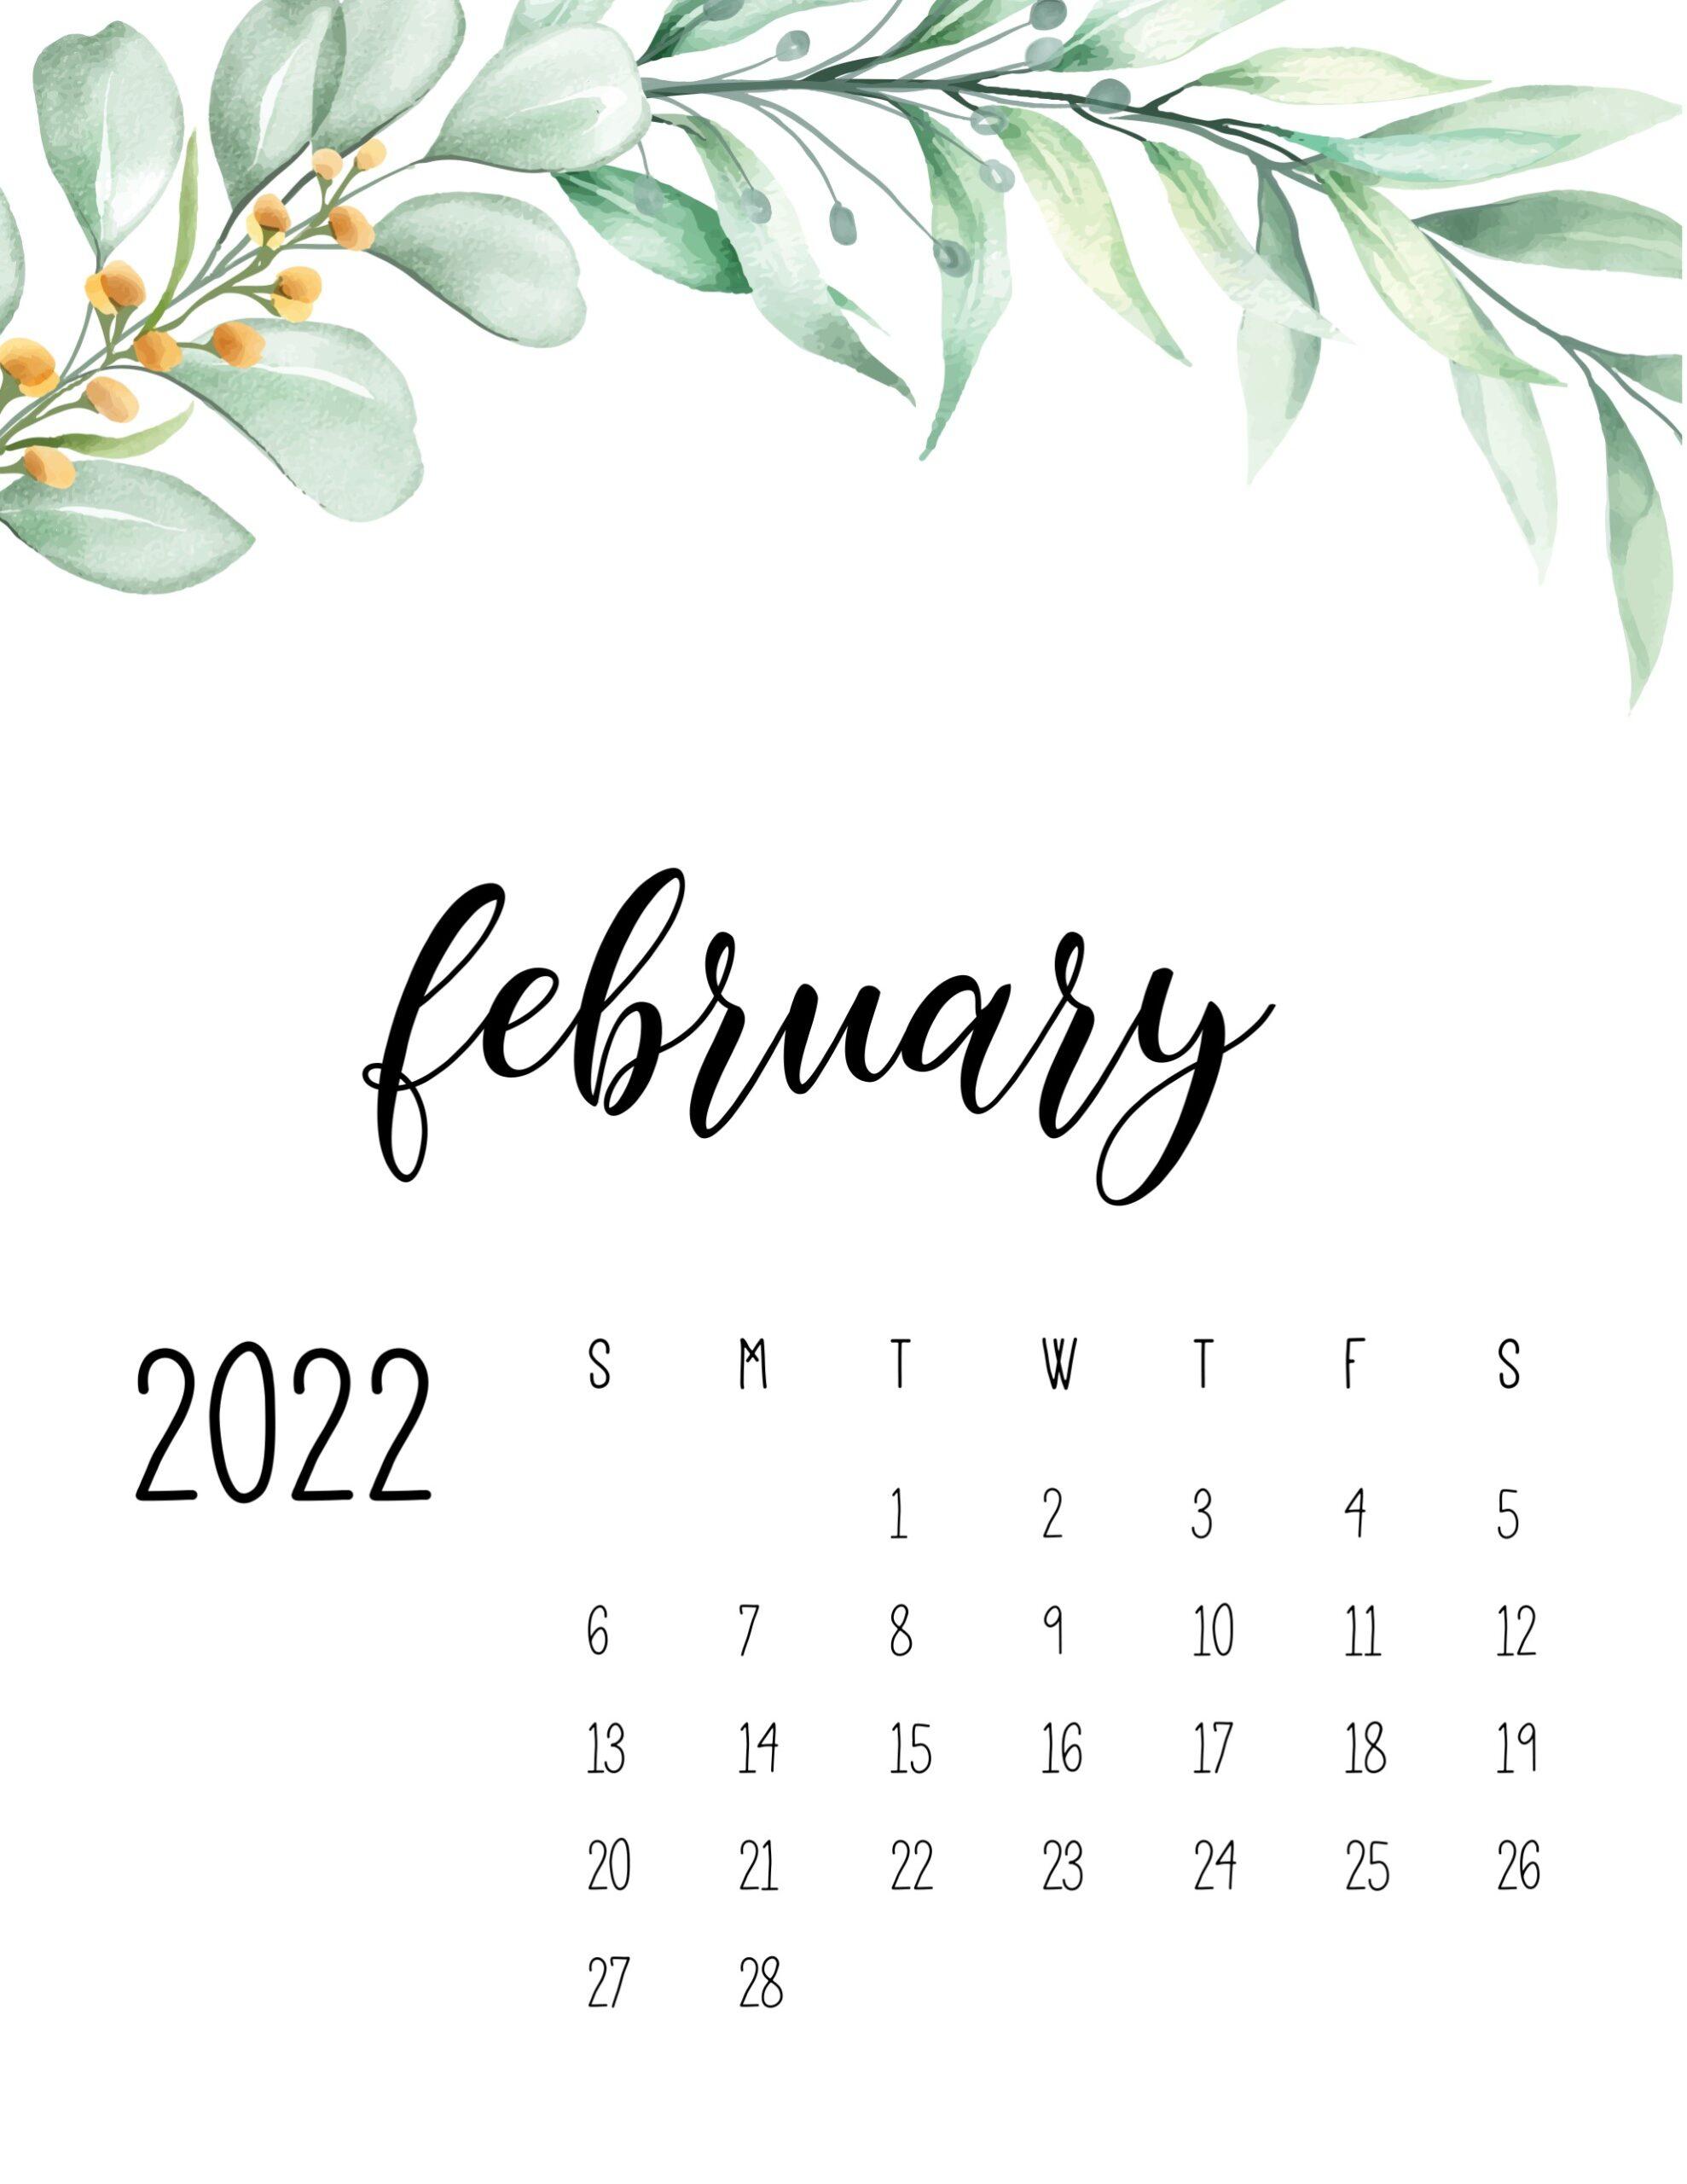 February 2022 Calendar Wallpaper February 2022 Calendar Wallpapers - Top Free February 2022 Calendar  Backgrounds - Wallpaperaccess